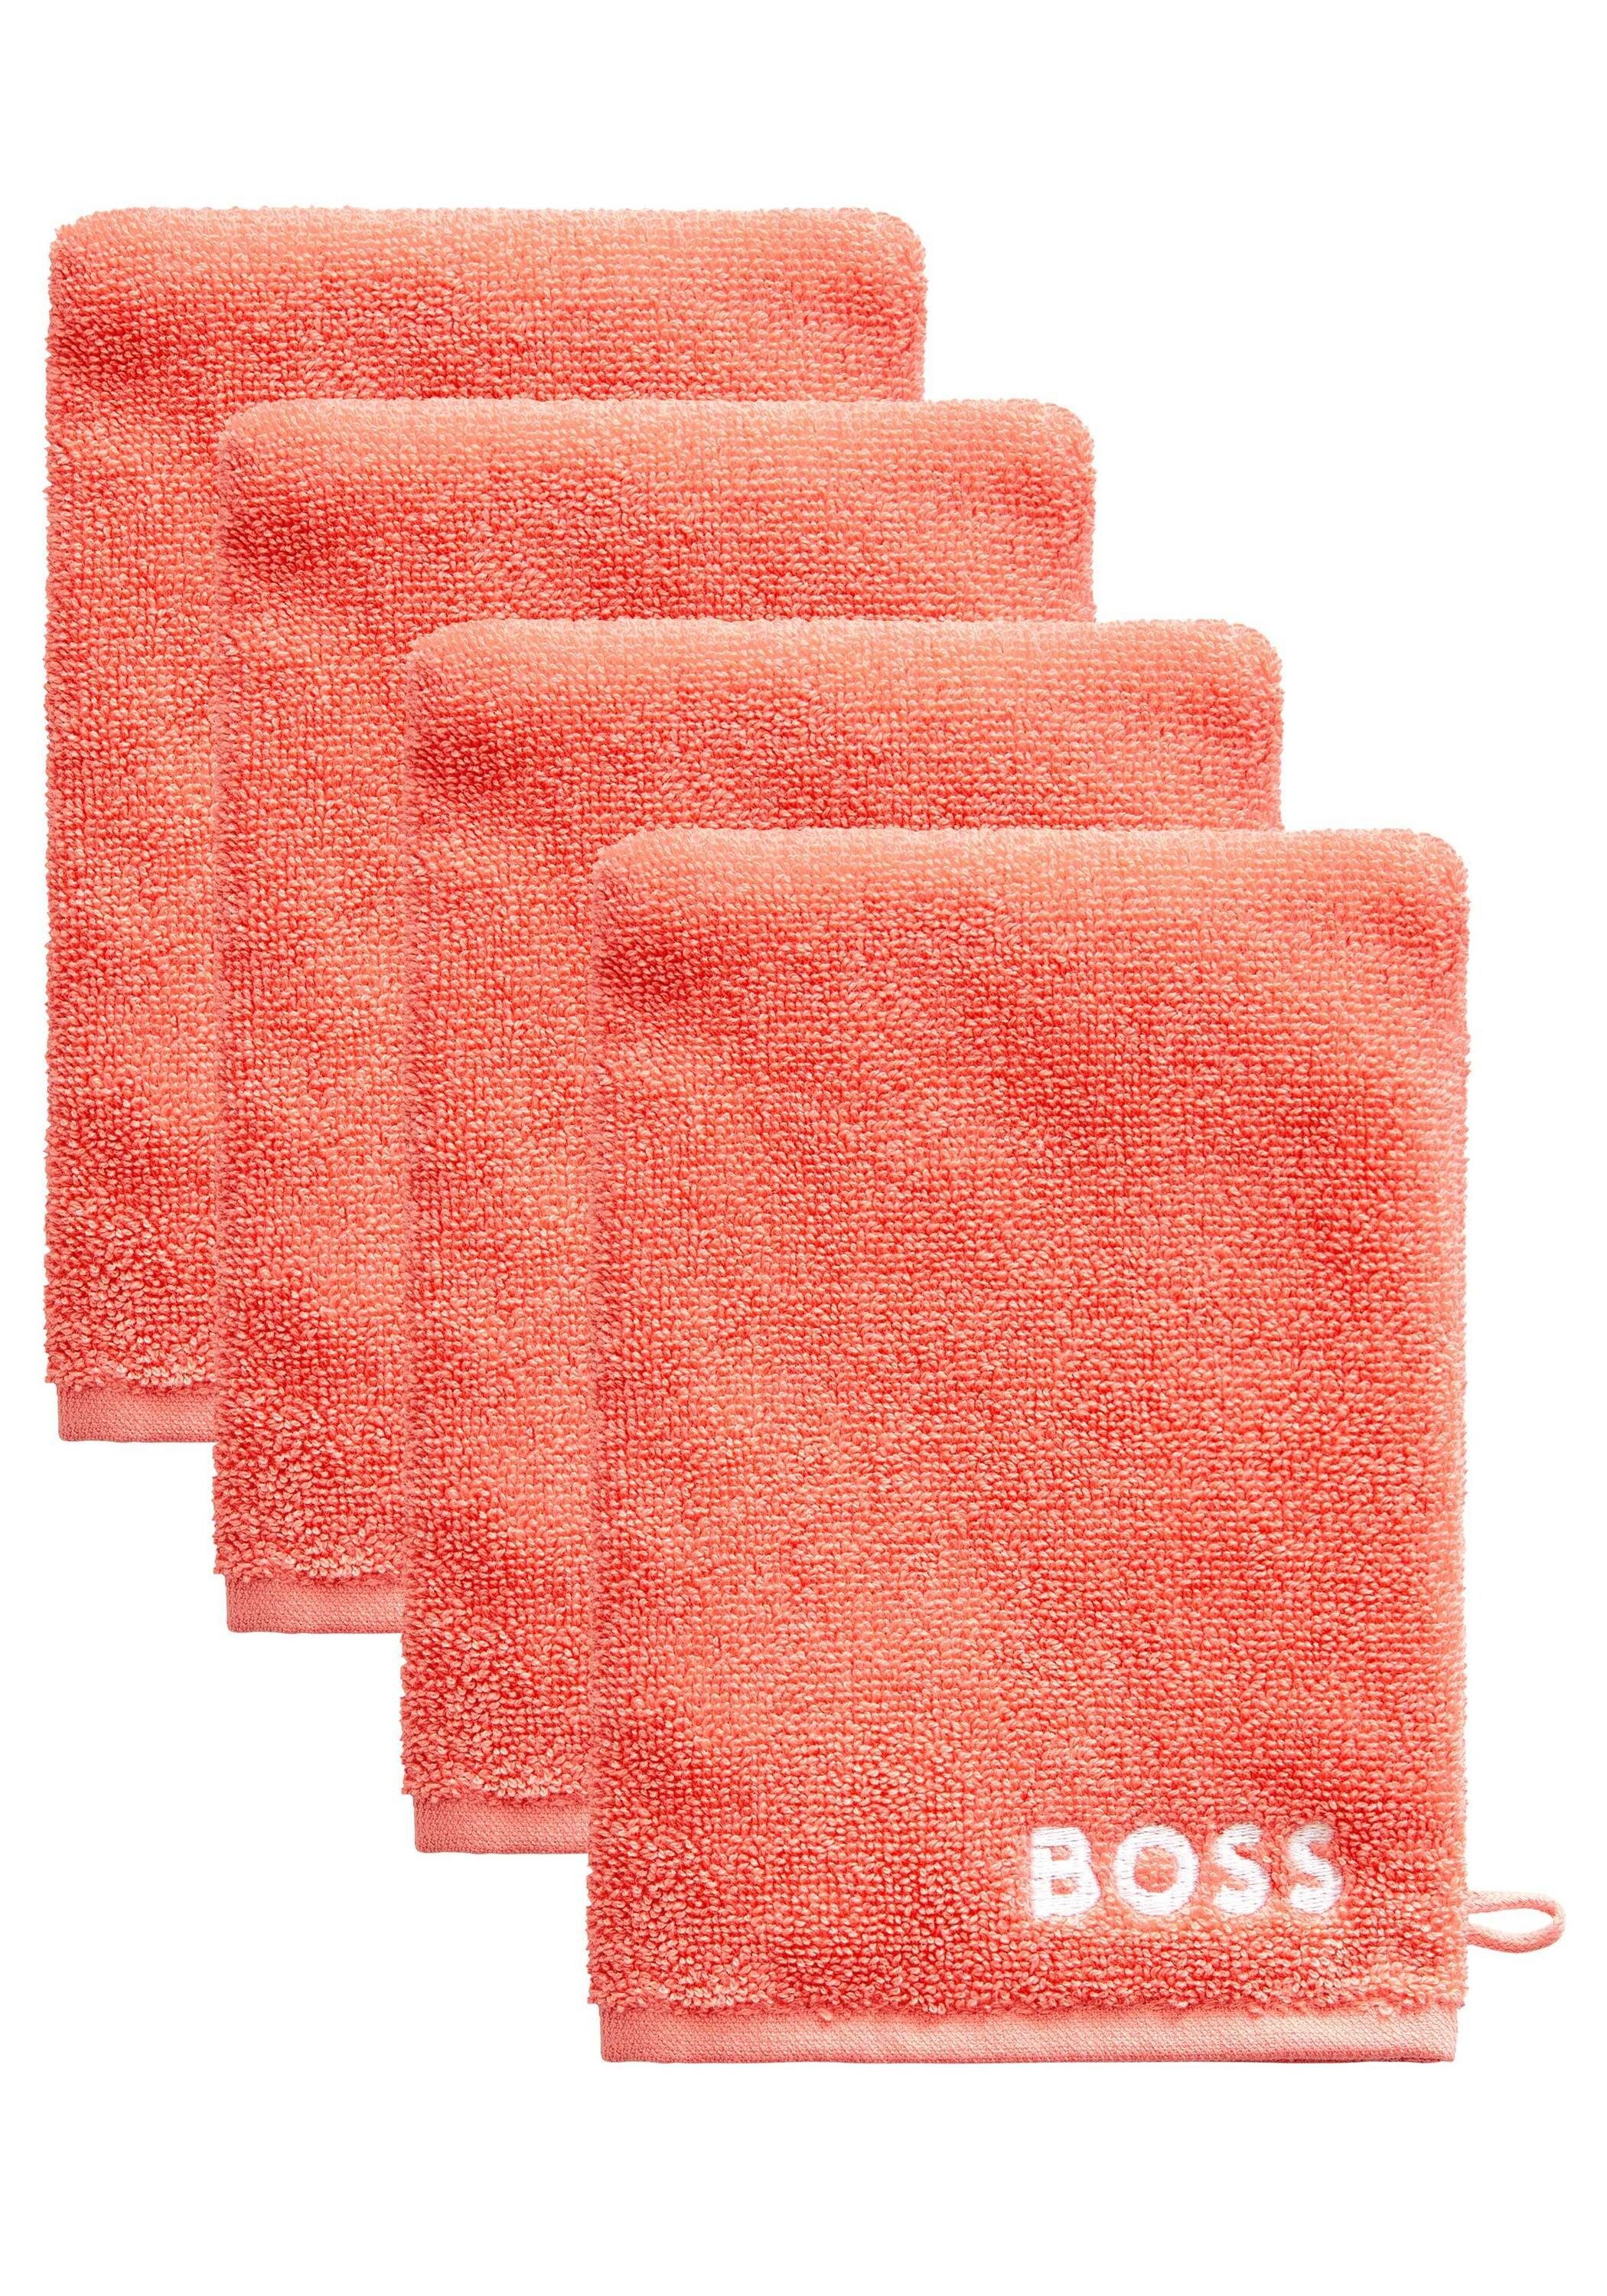 Waschhandschuhe, Design Hugo 4er-Set Home Handtücher mit modernem SORBETN Boss